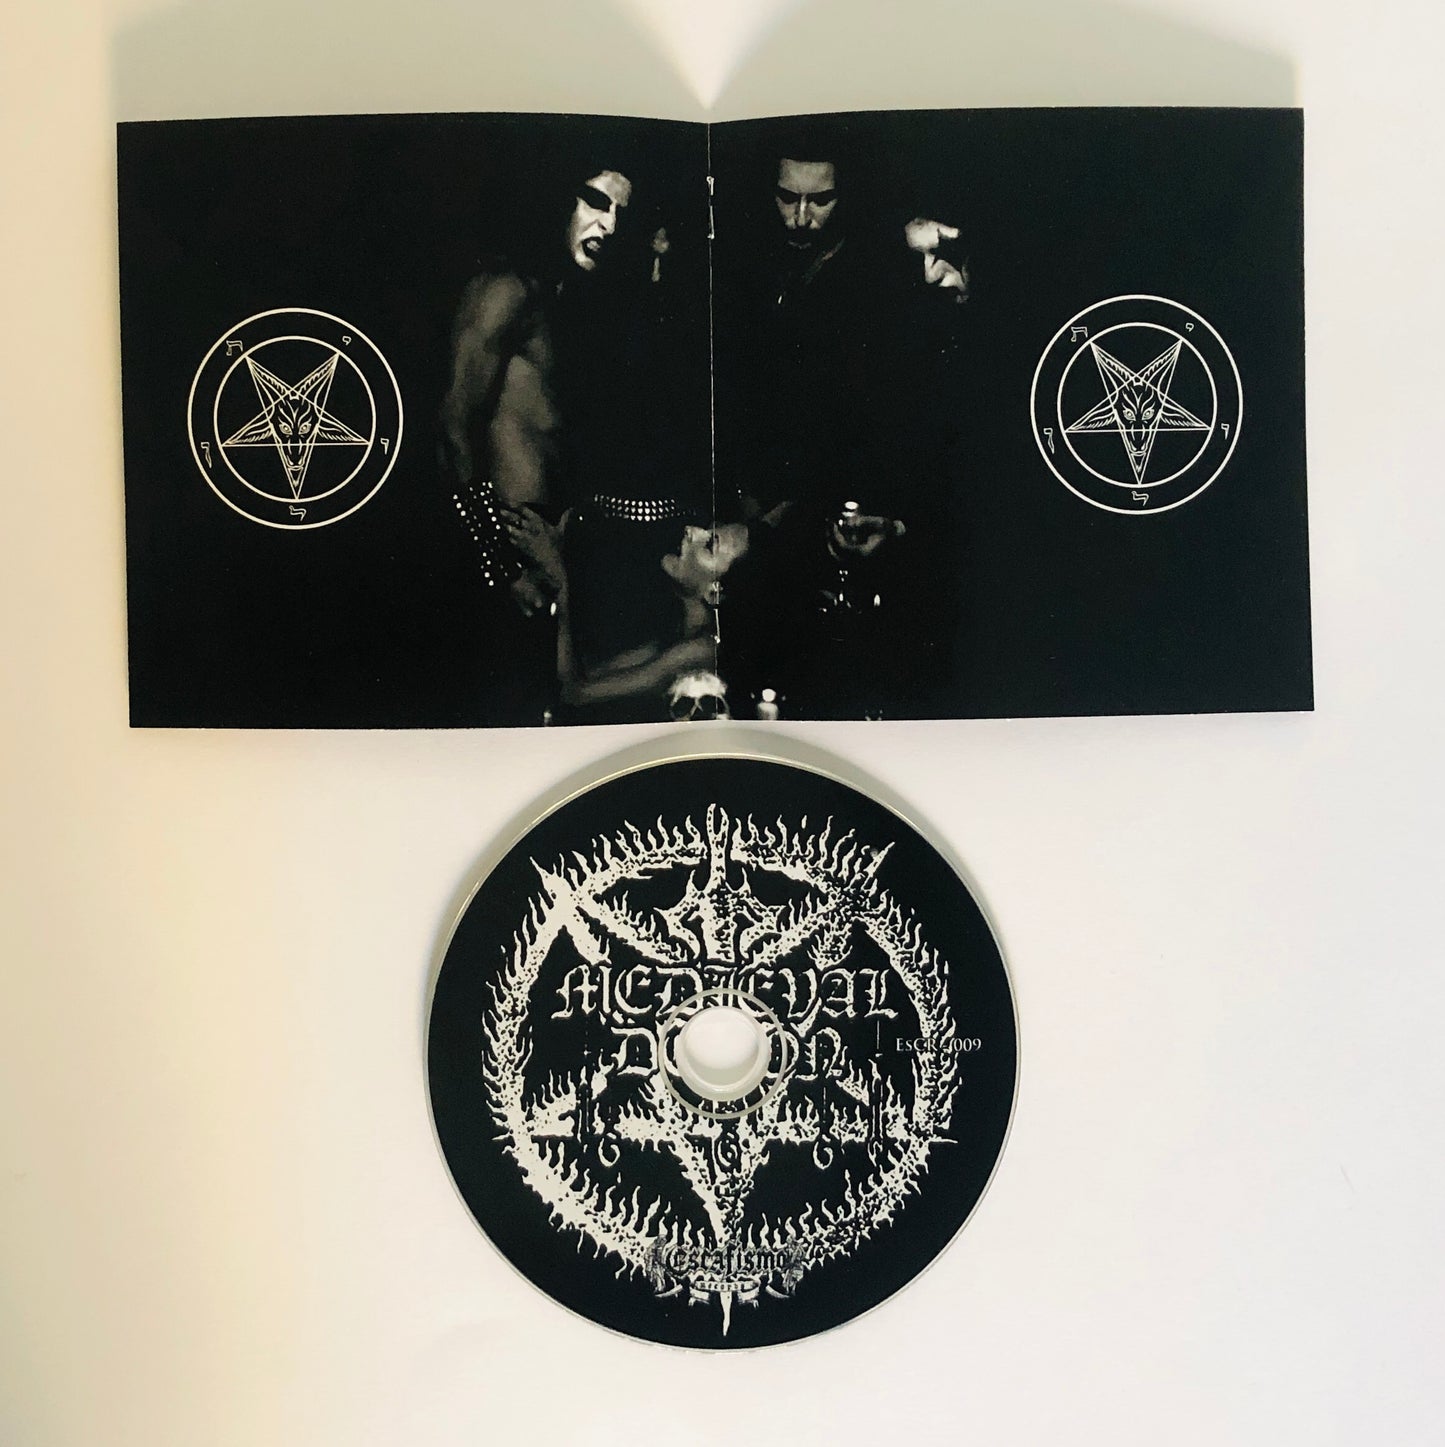 ESCR-009: Medieval Demon (Gre) "Demonolatria" - CDs